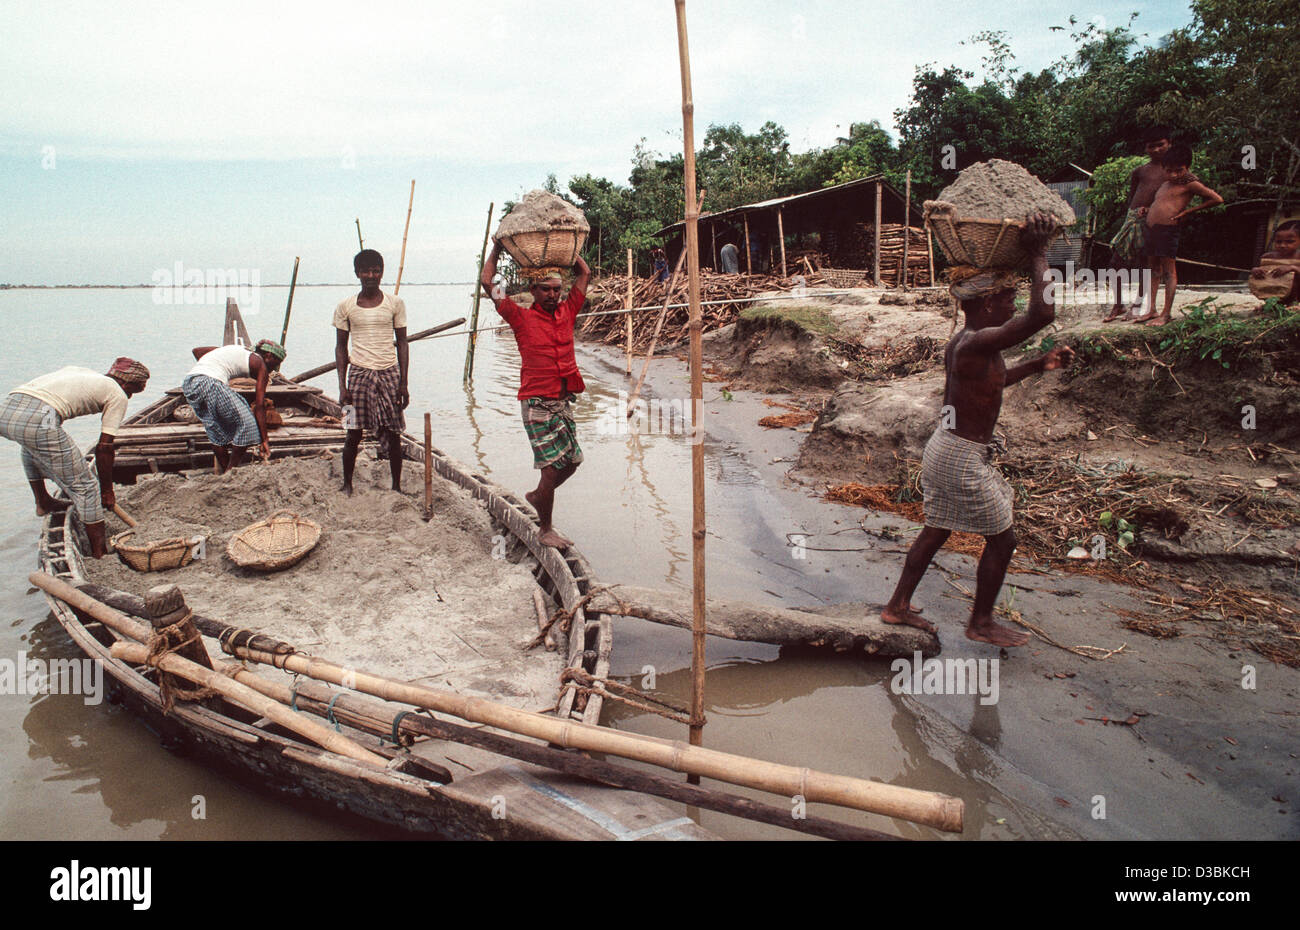 Porteurs transportant des paniers de sable sur leur tête pris d'un bateau local pour la construction et la fabrication de ciment. Shiapur, Bangladesh Banque D'Images